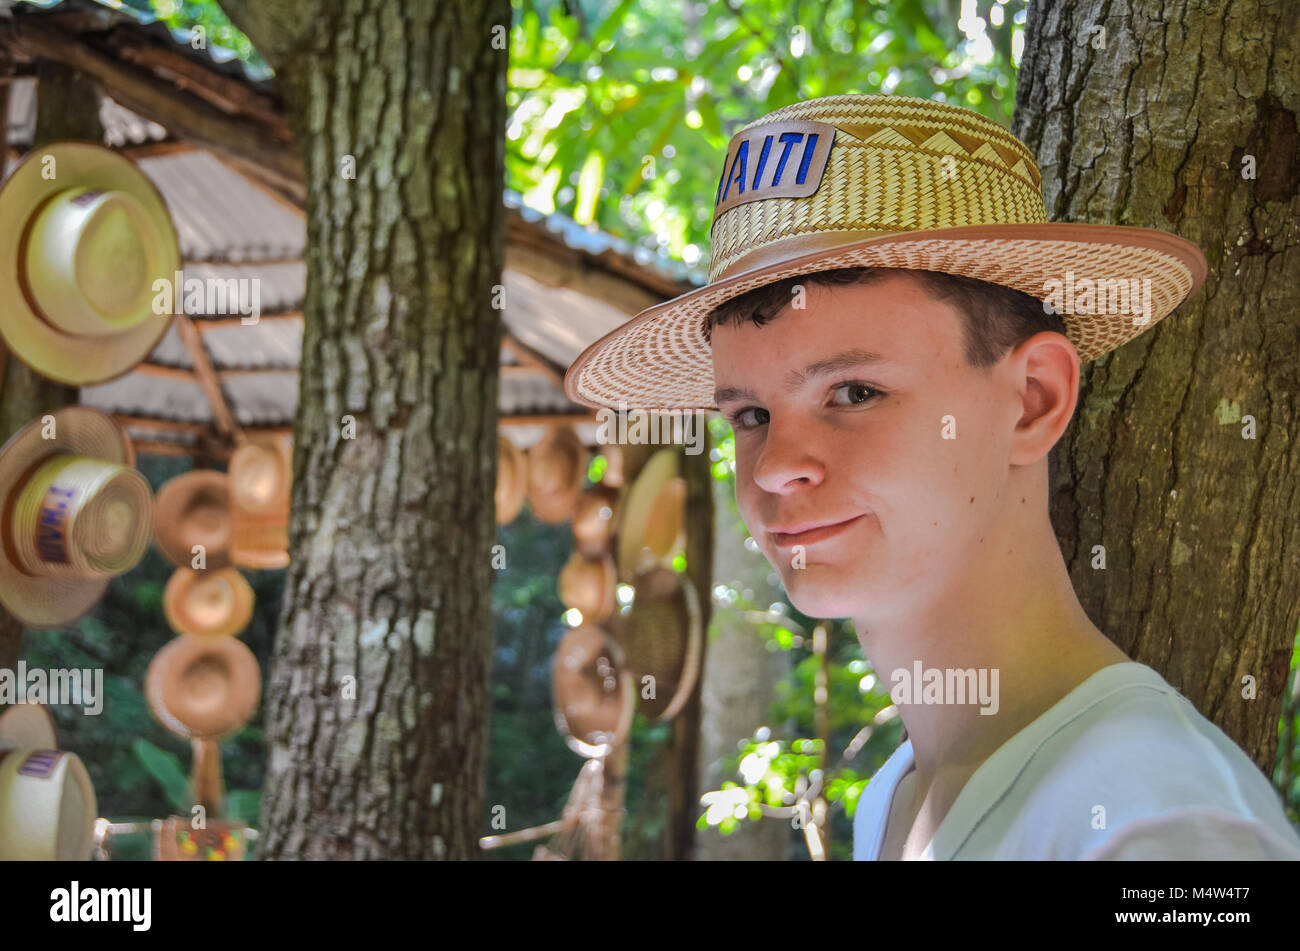 Labadee, Haití. Retrato de un joven adolescente artesanal vistiendo un sombrero de paja con el telón de fondo de árboles y de mercado. Foto de stock